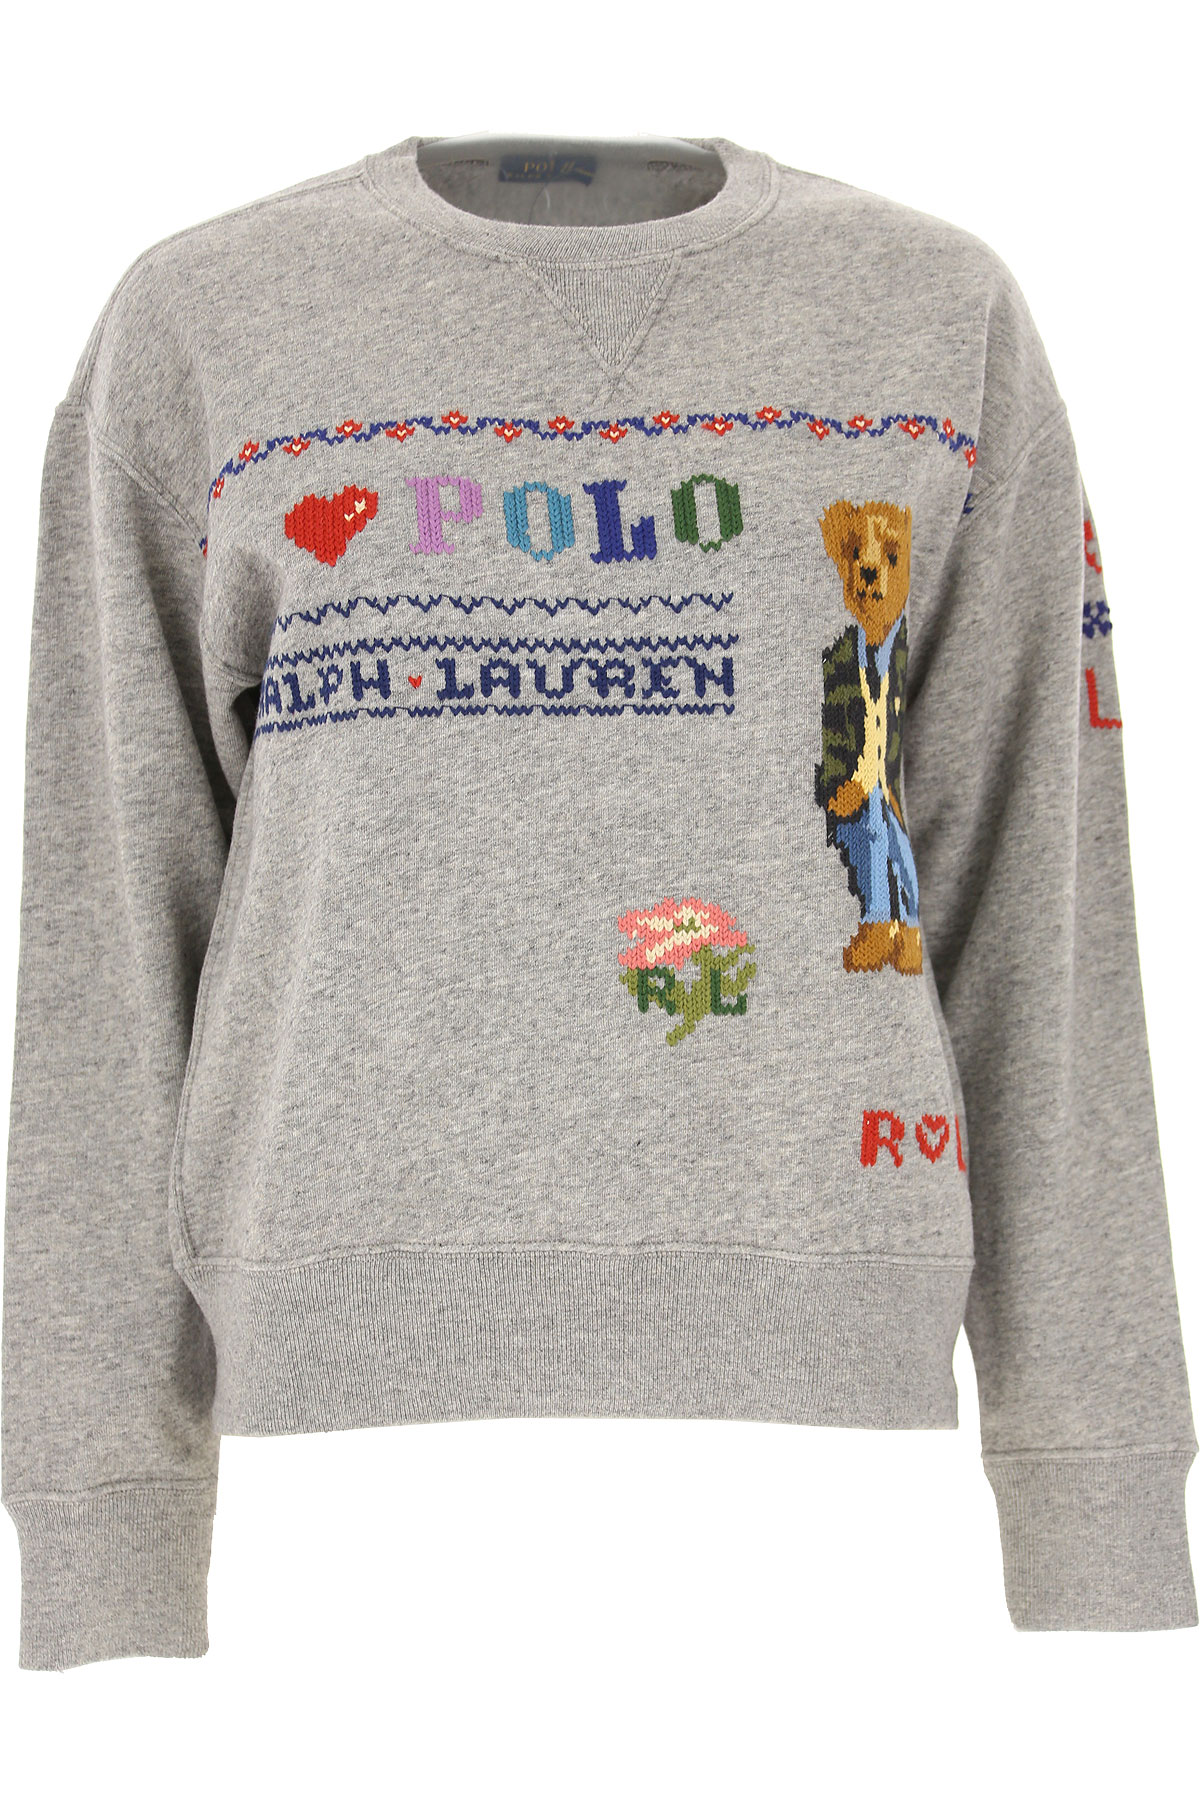 Ralph Lauren Sweatshirt für Damen, Kapuzenpulli, Hoodie, Sweats Günstig im Sale, Hellgrau, Baumwolle, 2017, L XS